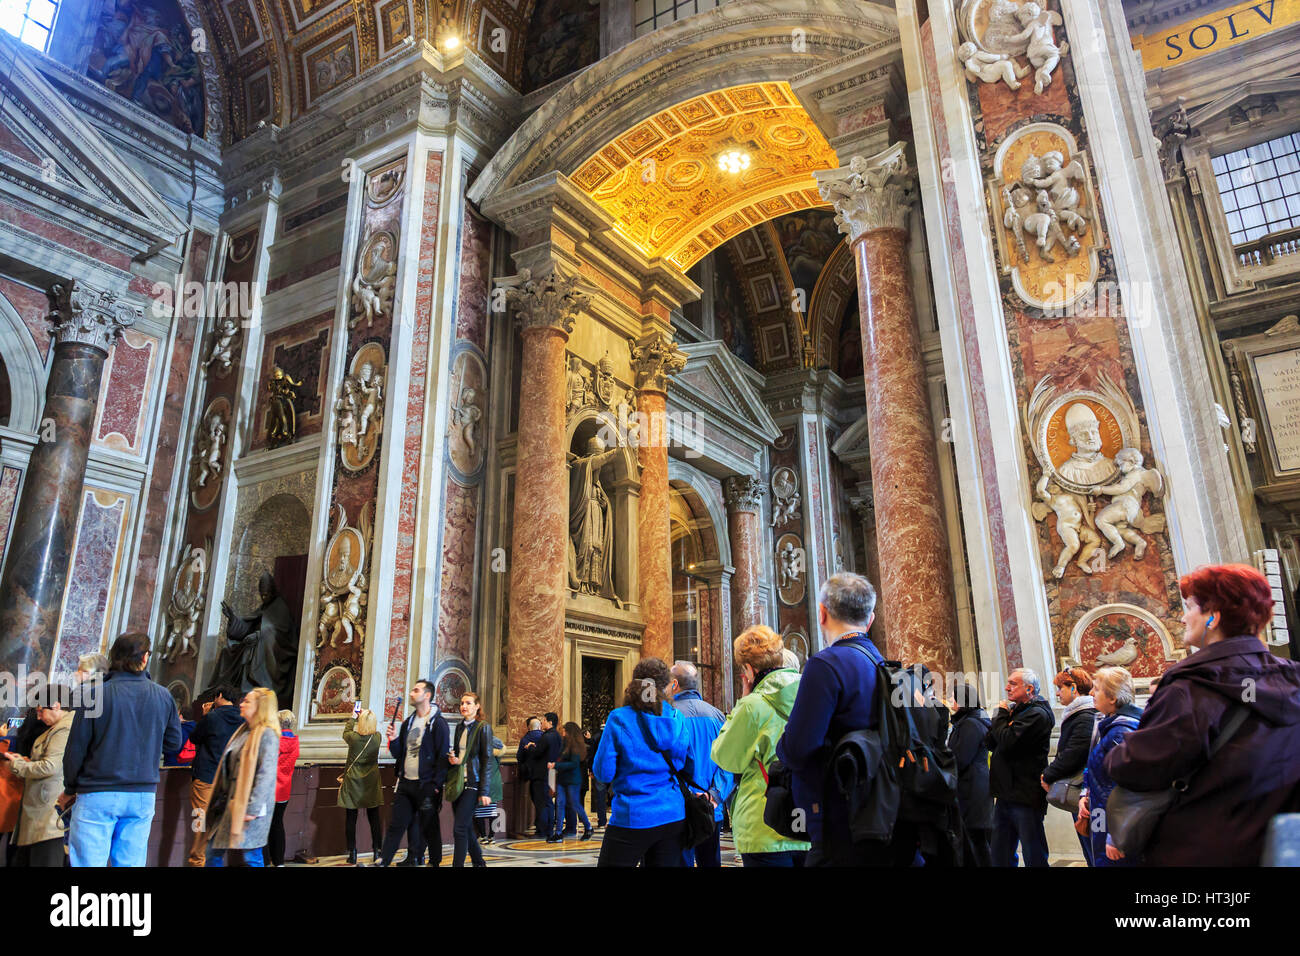 Détail à l'intérieur de la Basilique de St Pierre, Vatican, Rome, Italie Banque D'Images